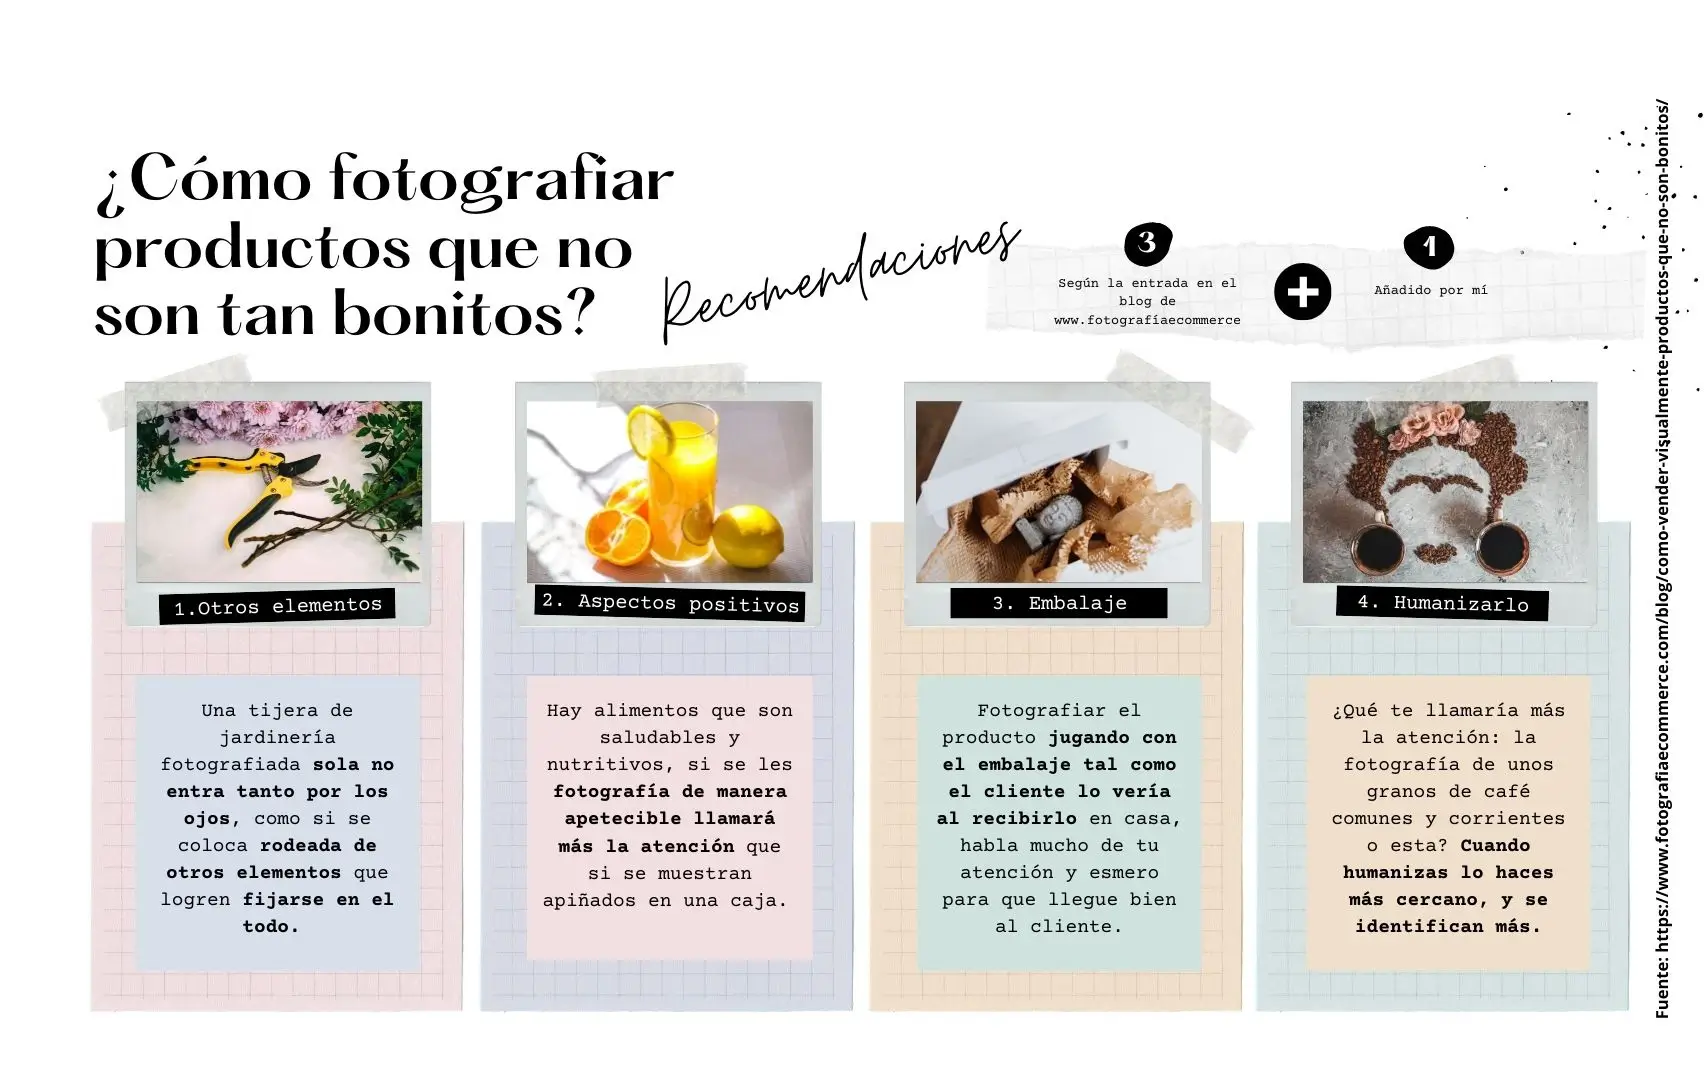 Infografía sobre cómo fotografiar productos que no son bonitos